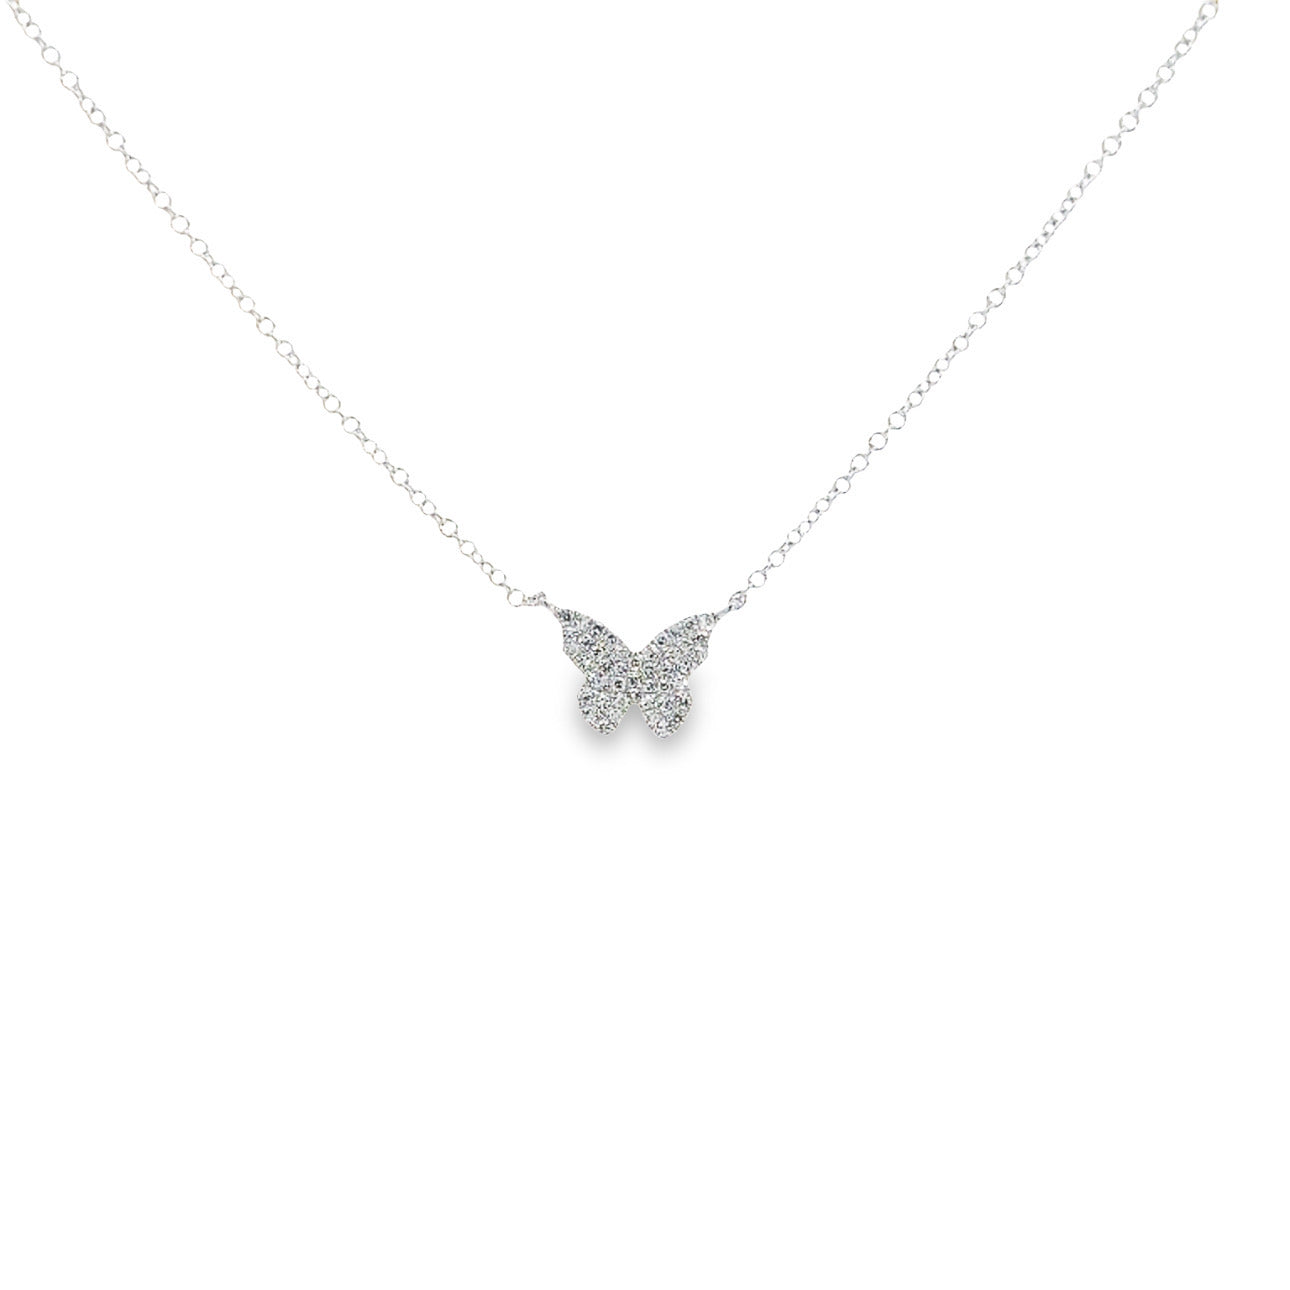 WD1101 14kt Pave diamond Butterfly Necklace